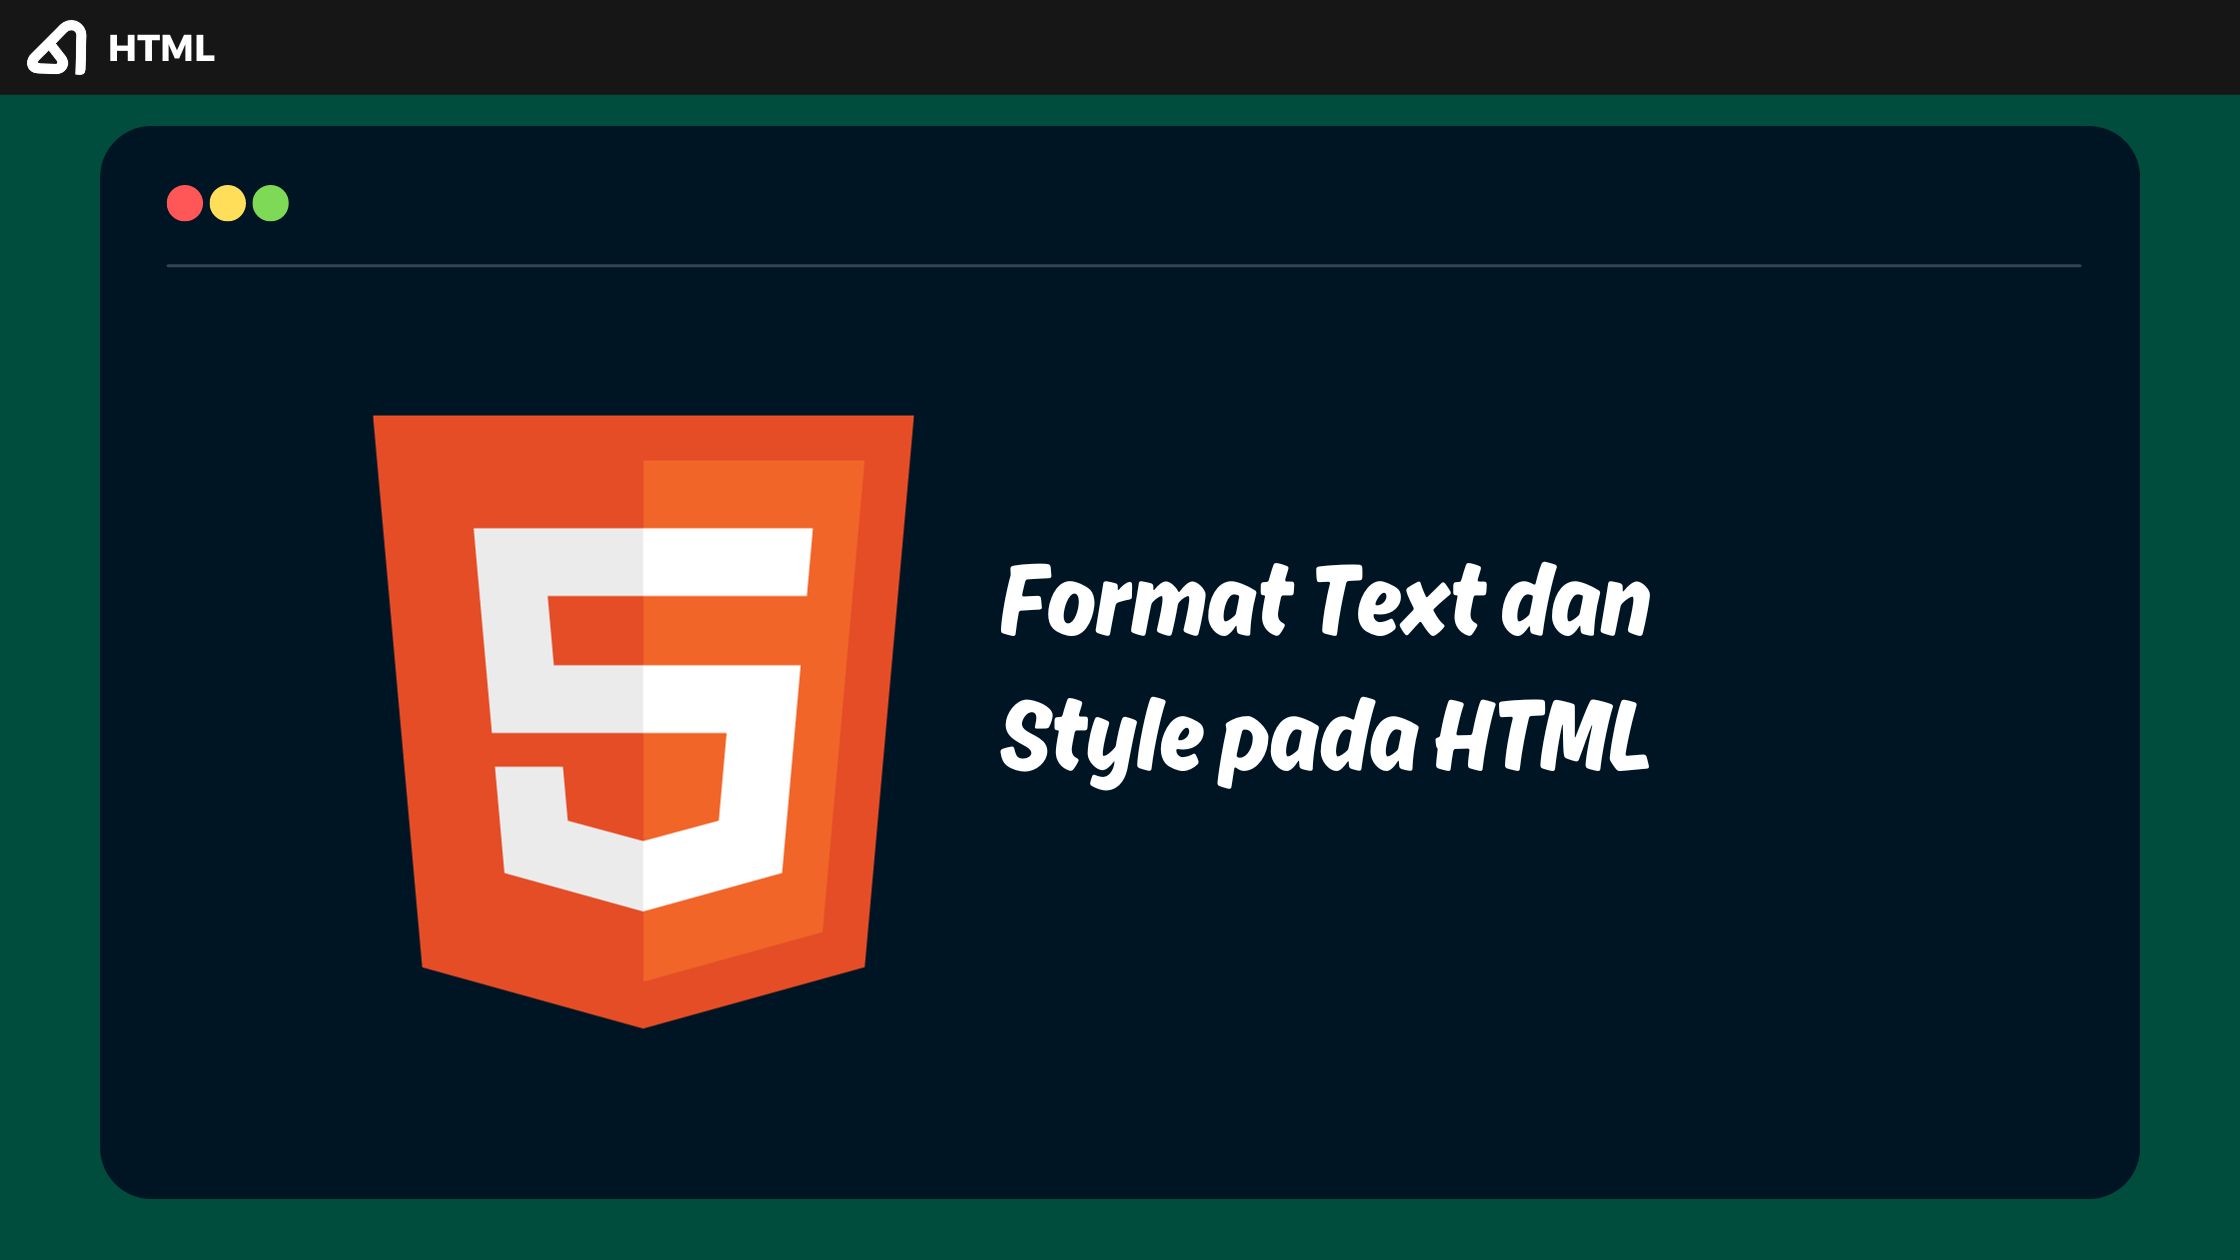 Format Text dan Style pada HTML